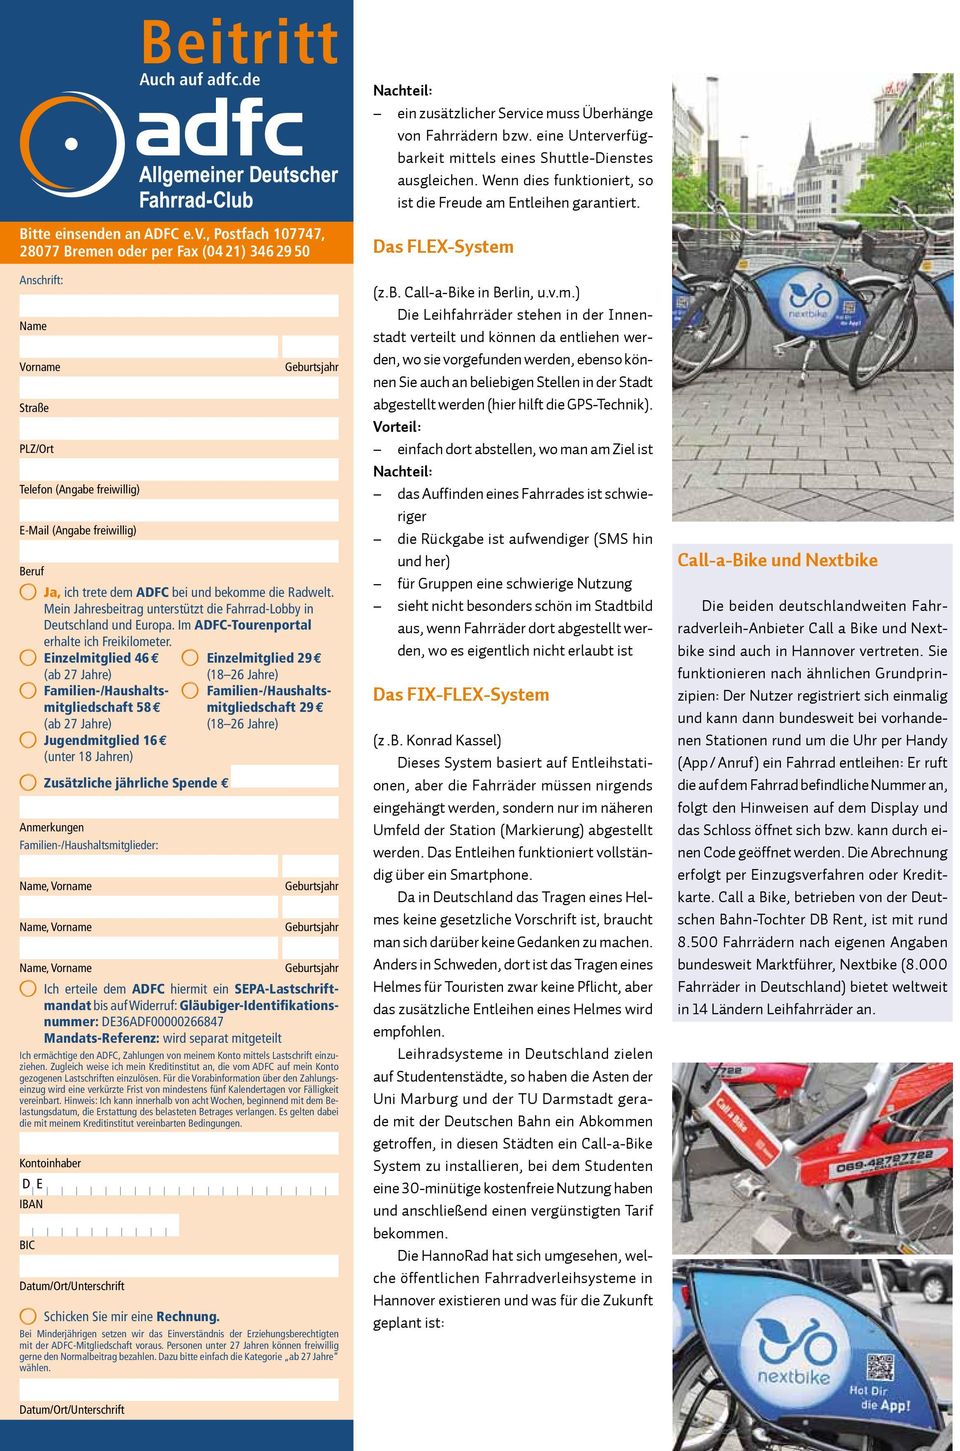 bei und bekomme die Radwelt. Mein Jahresbeitrag unterstützt die Fahrrad-Lobby in Deutschland und Europa. Im ADFC-Tourenportal erhalte ich Freikilometer.